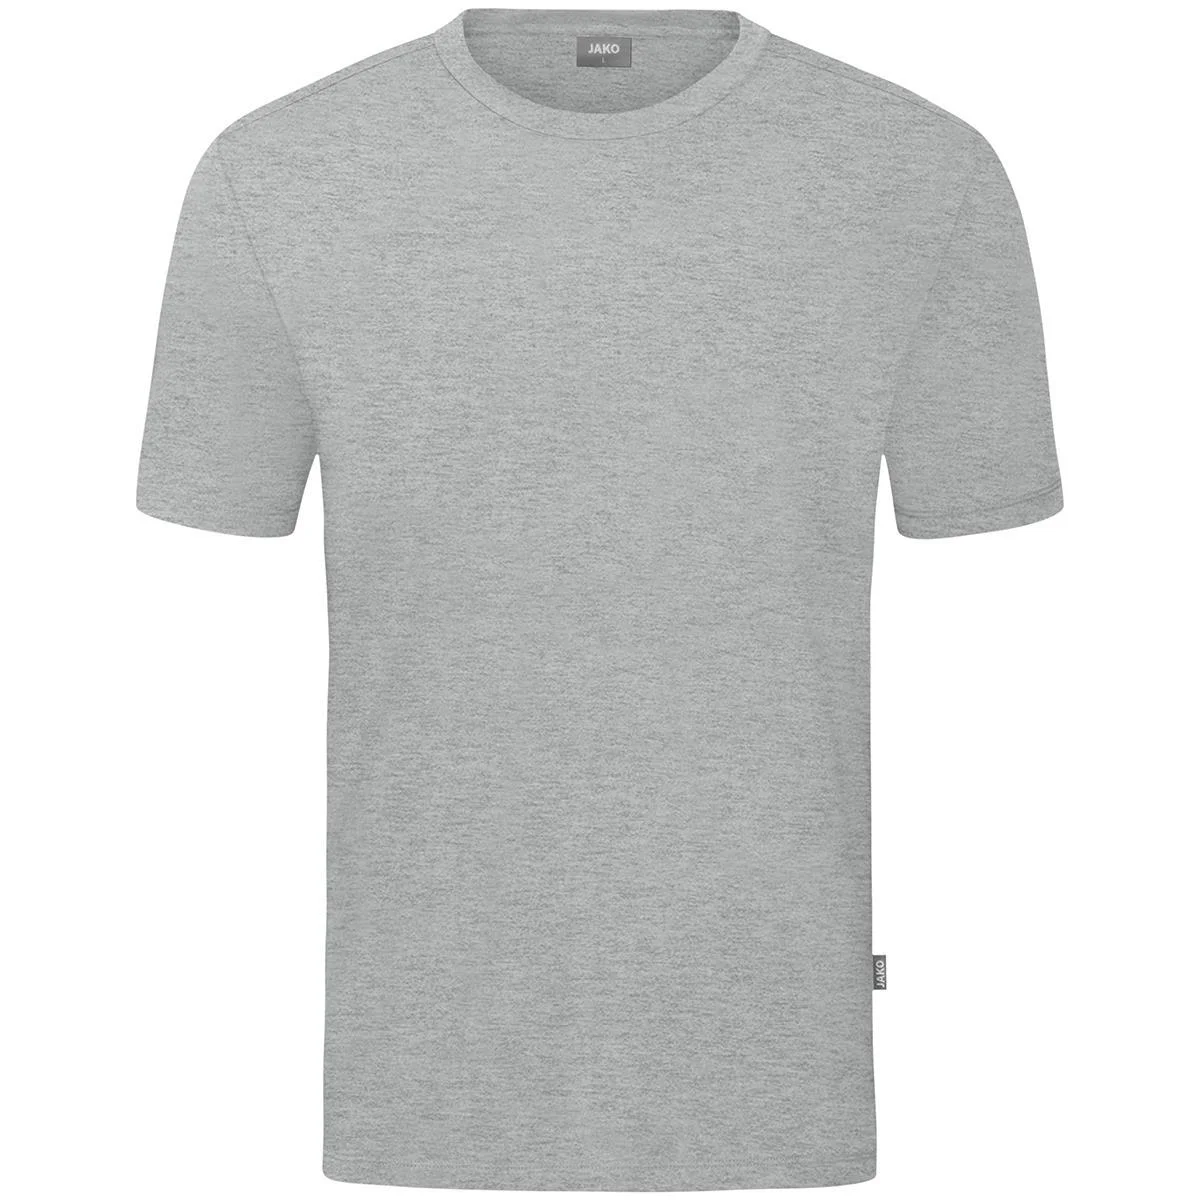 JAKO Herren T-Shirt Organic, hellgrau meliert, Gr.4XL